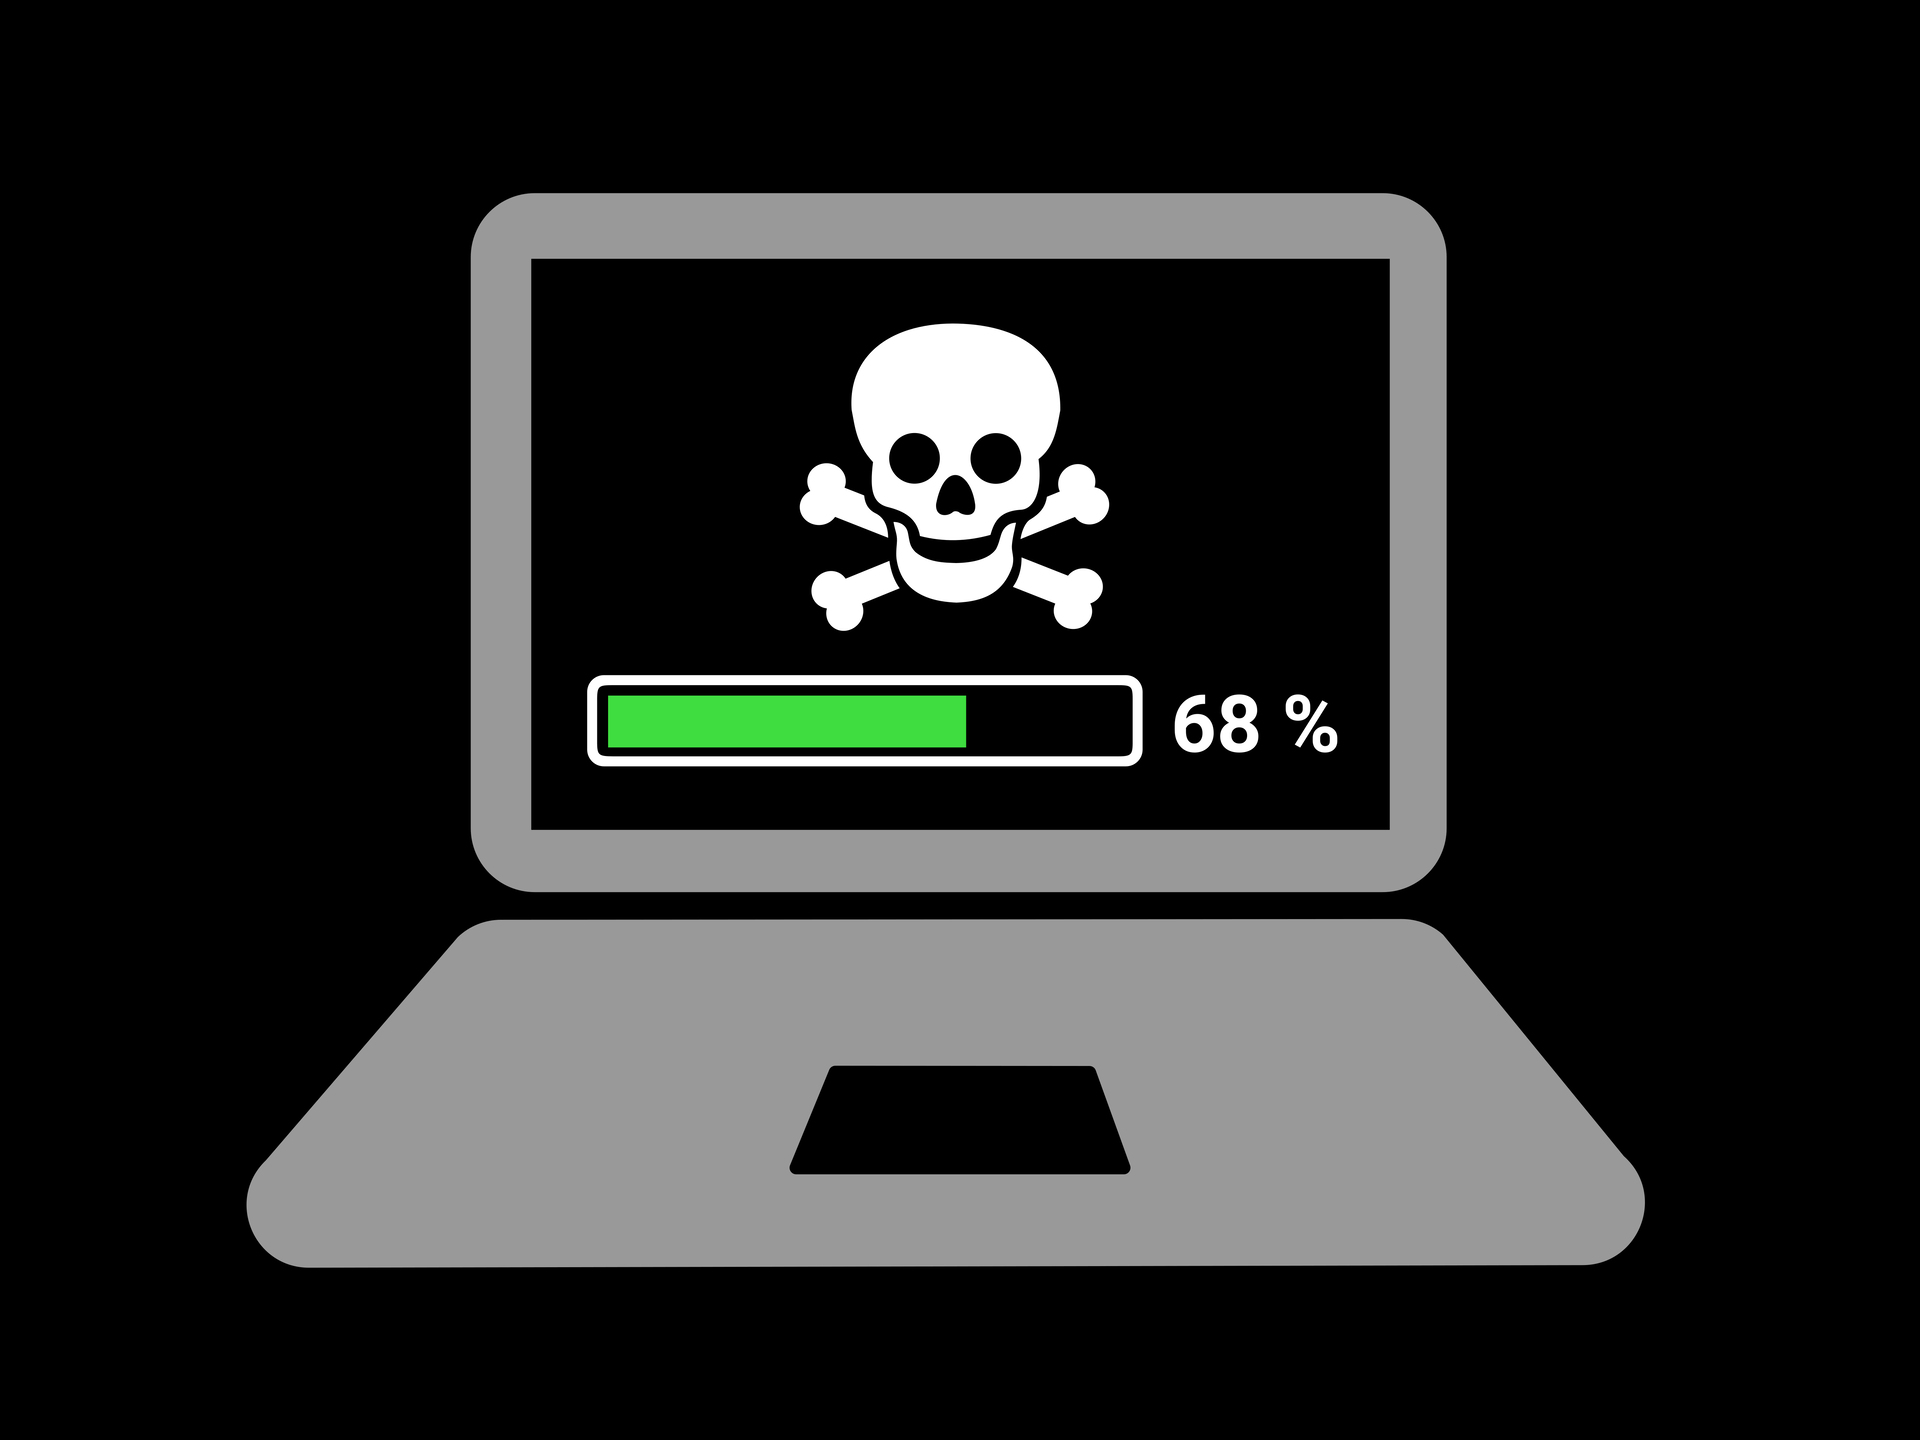 Piratage : ces sites de streaming vont être bloqués par les FAI, sur ordre de la justice